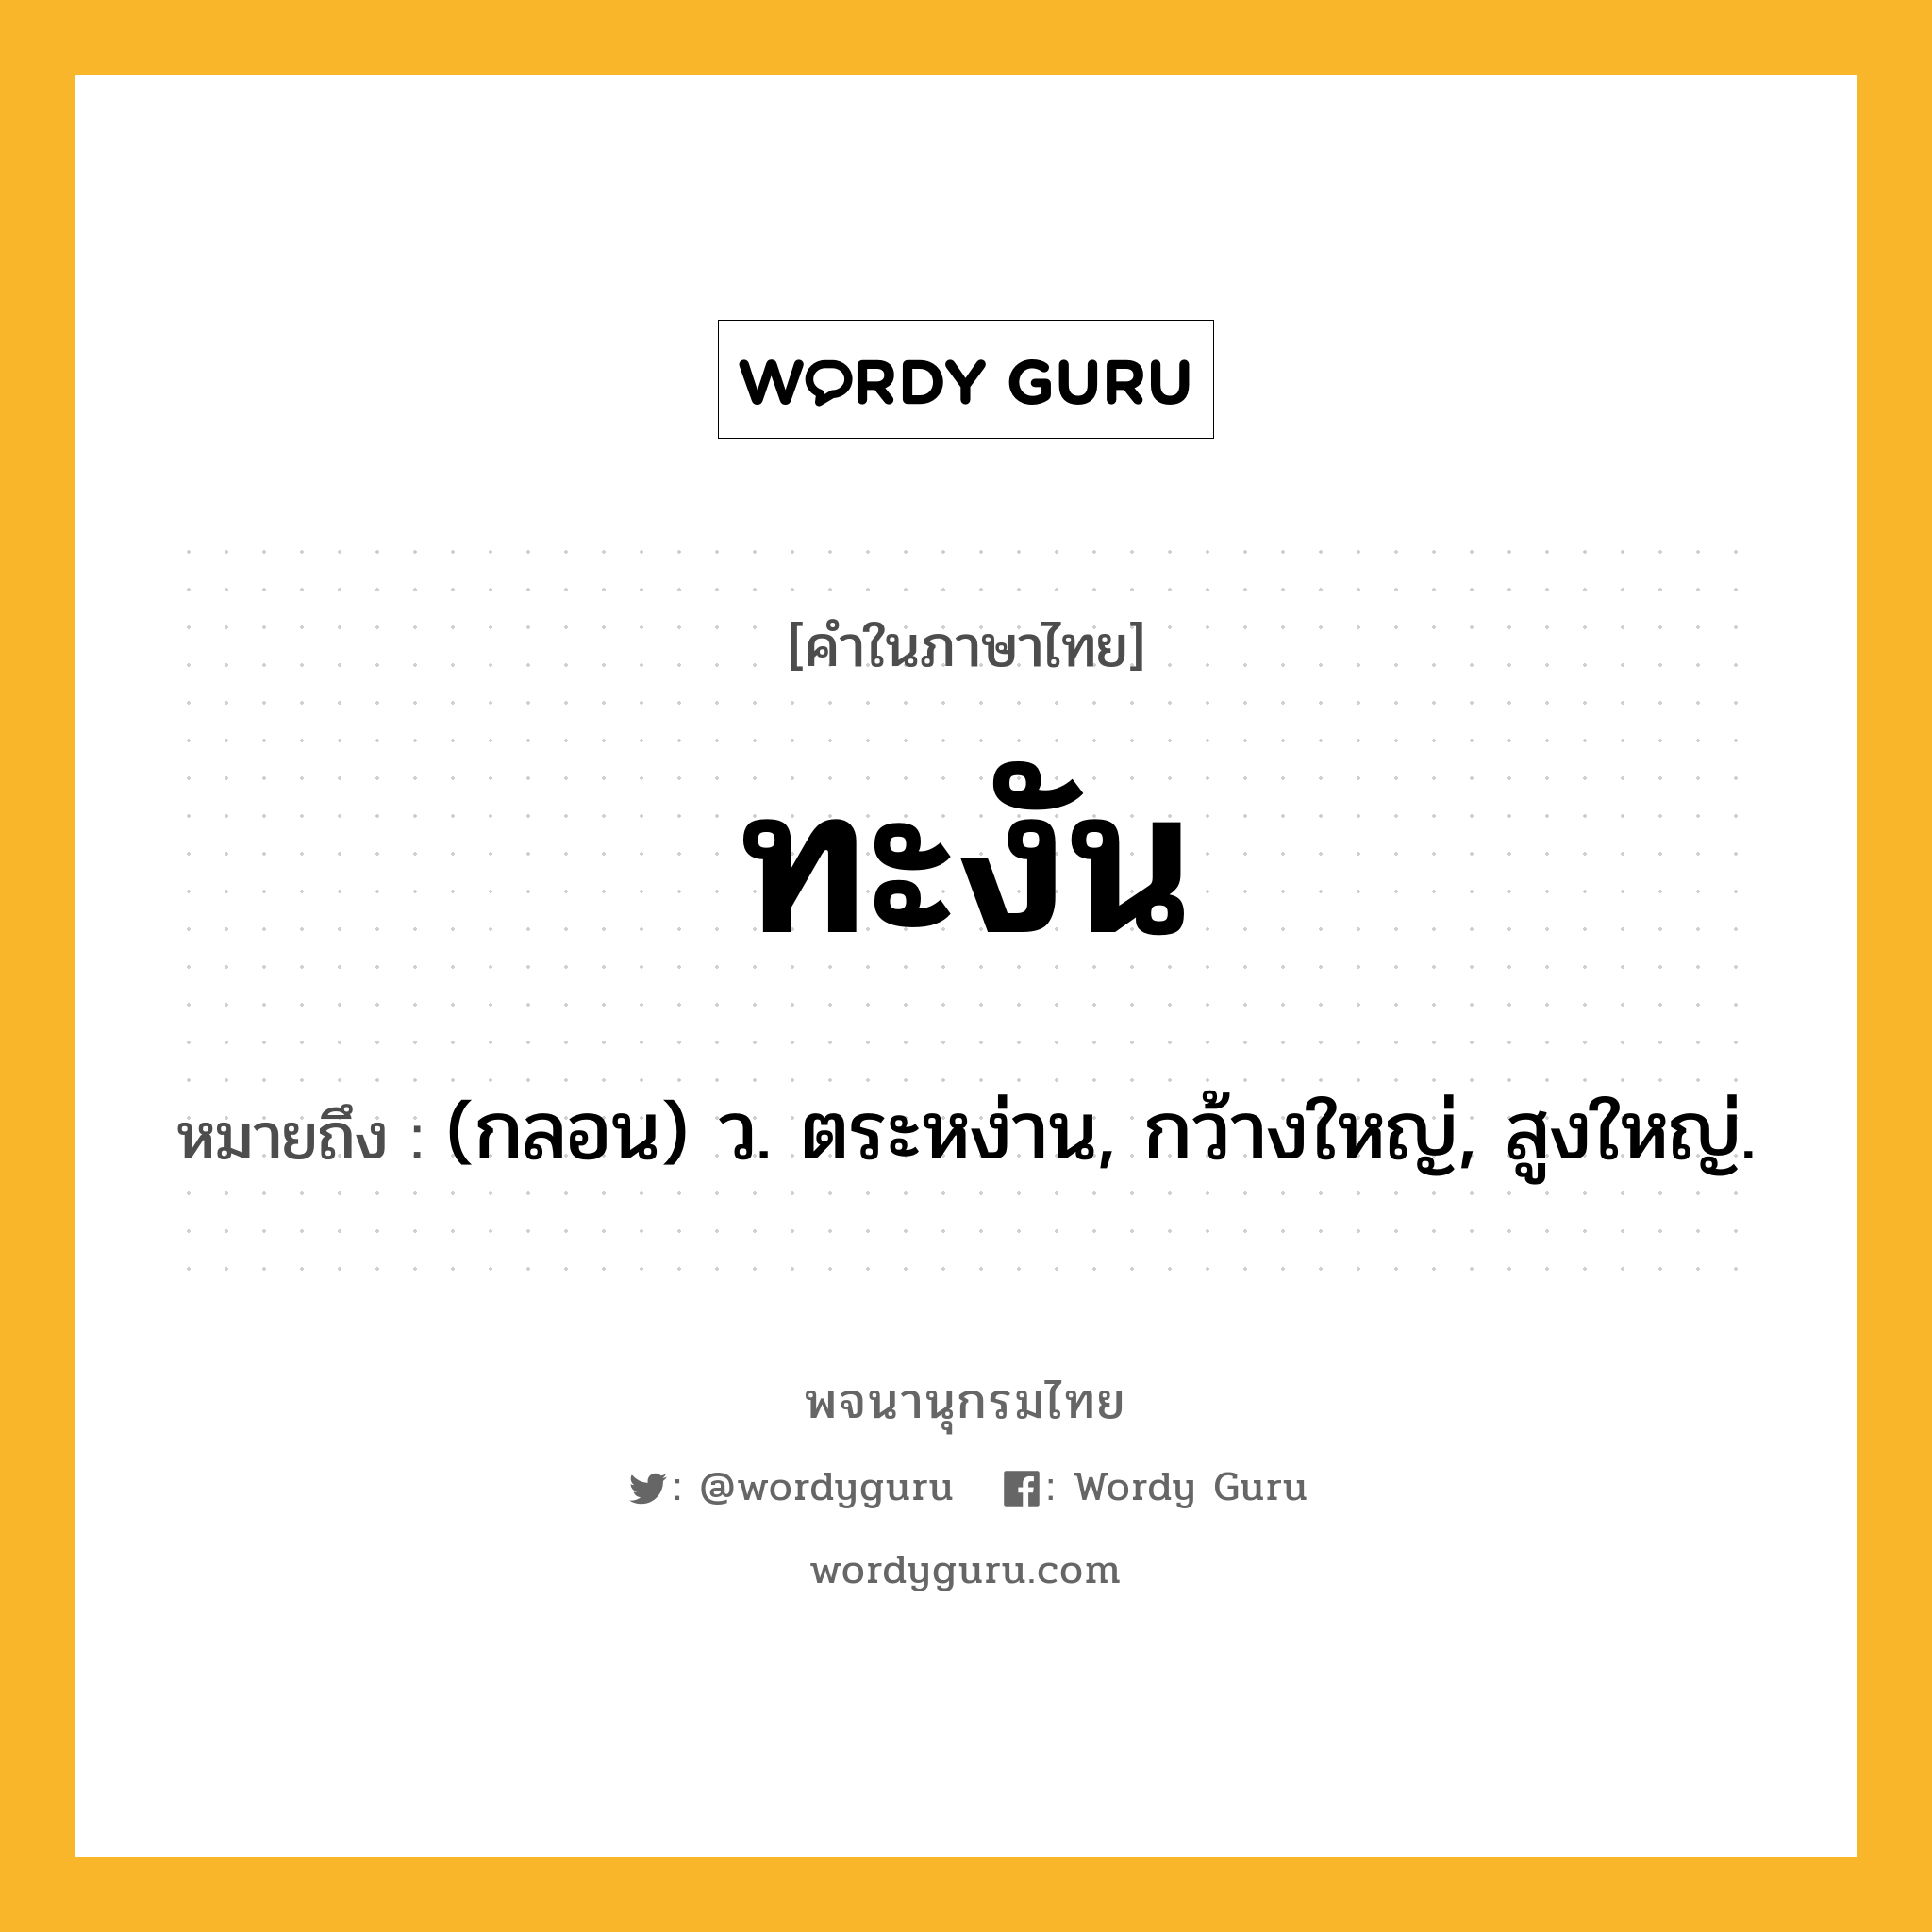 ทะงัน ความหมาย หมายถึงอะไร?, คำในภาษาไทย ทะงัน หมายถึง (กลอน) ว. ตระหง่าน, กว้างใหญ่, สูงใหญ่.